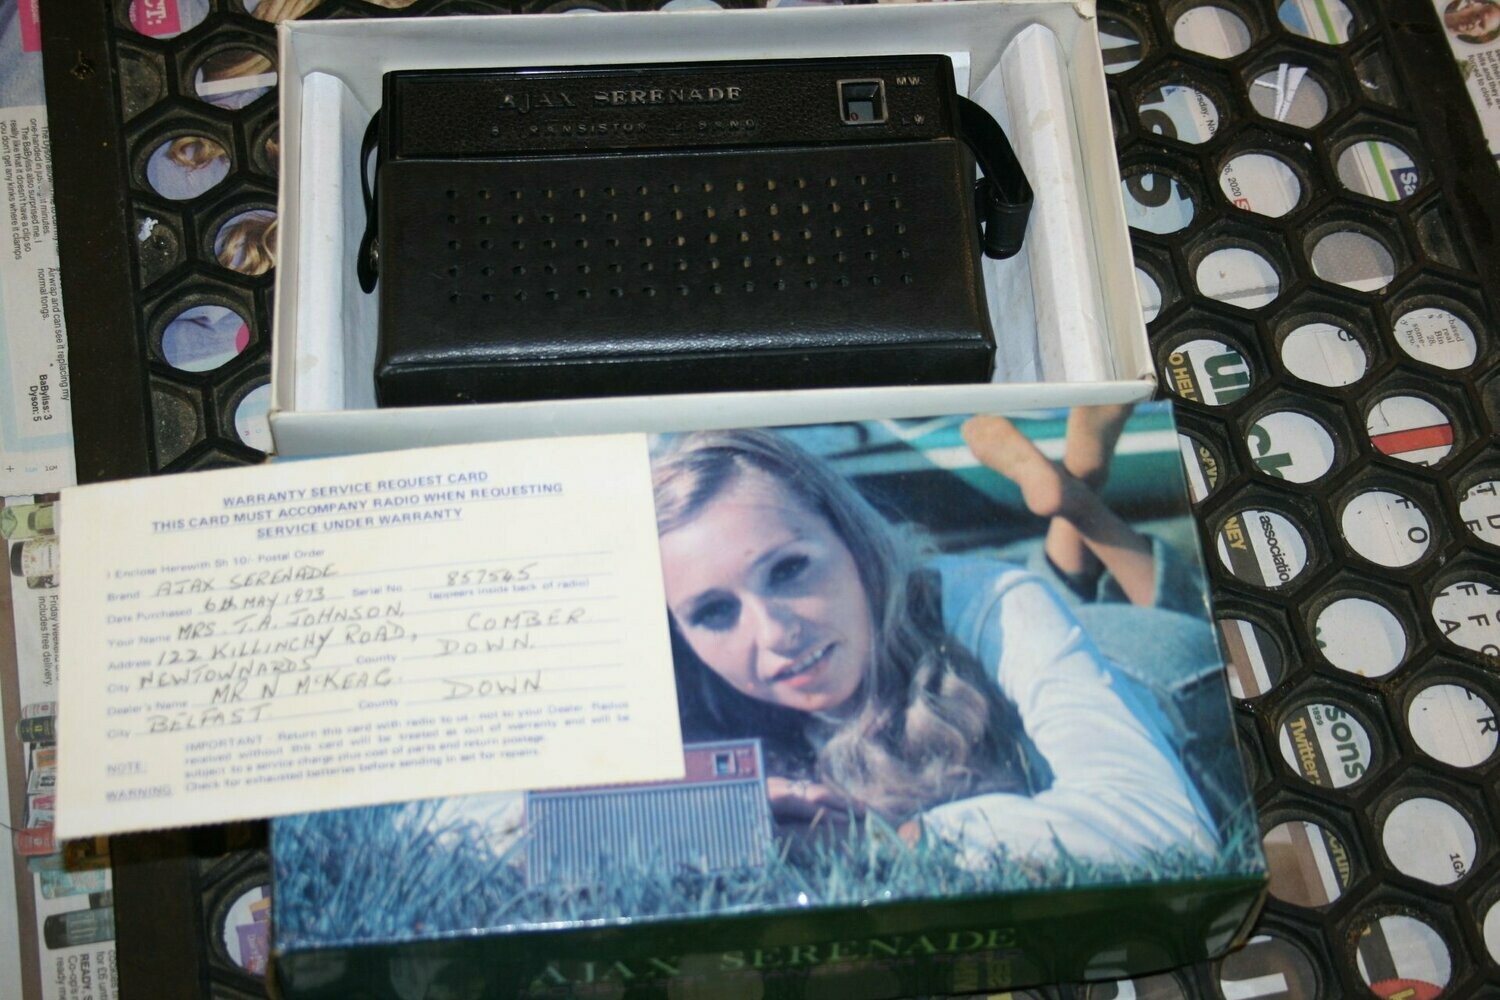 Ajax Serenade Portable (boxed) 1973 (SOLD)